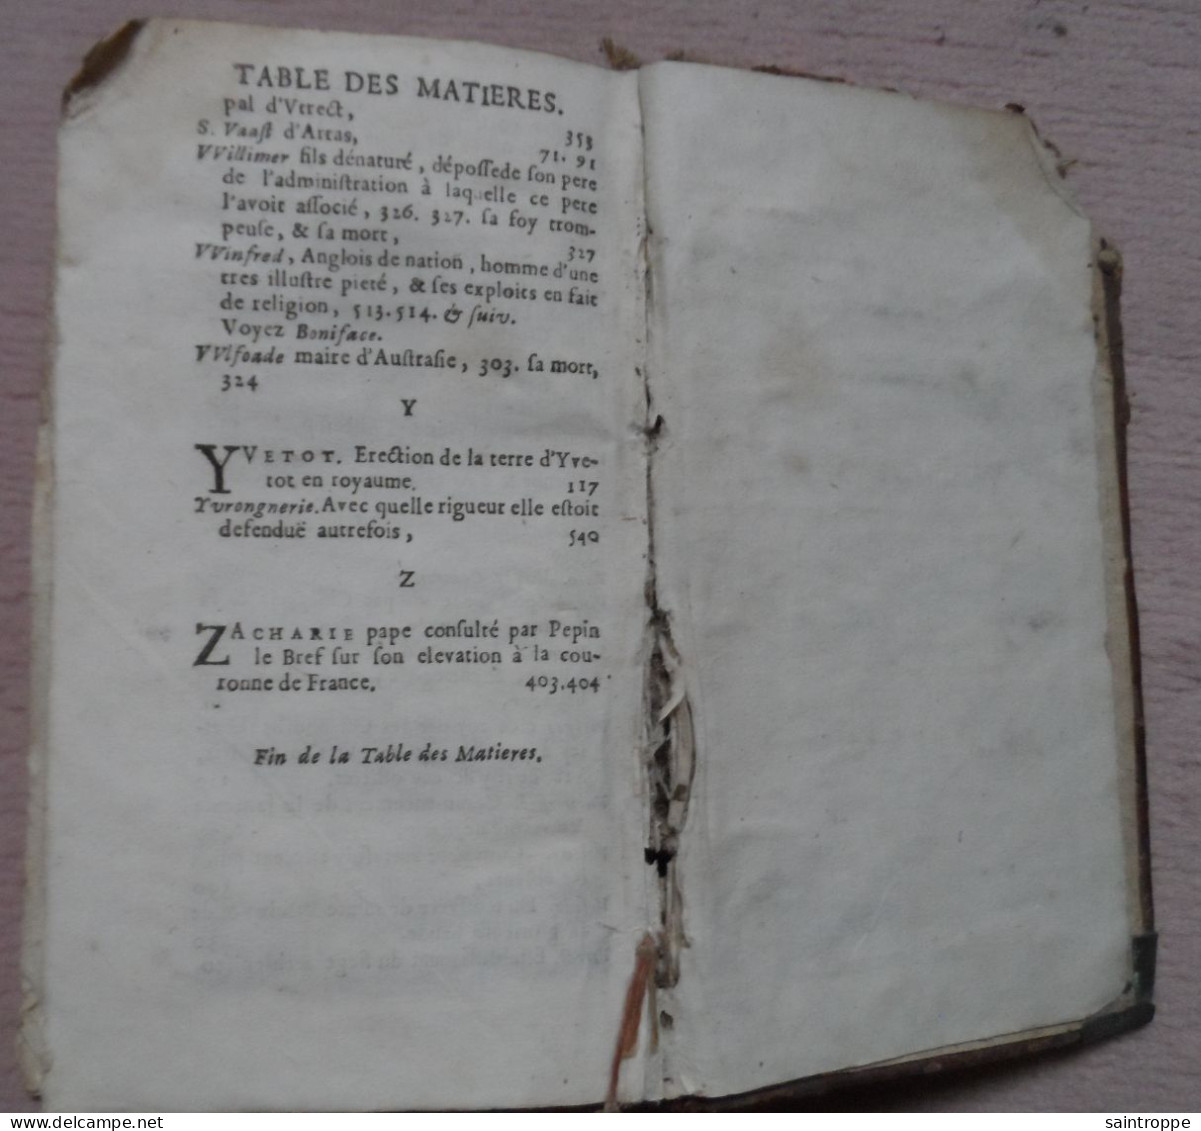 Livre Ancien de 1677.L'Histoire de France.Abrégé Chronologique.Tome Premier.Par le sieur de Mezeray.